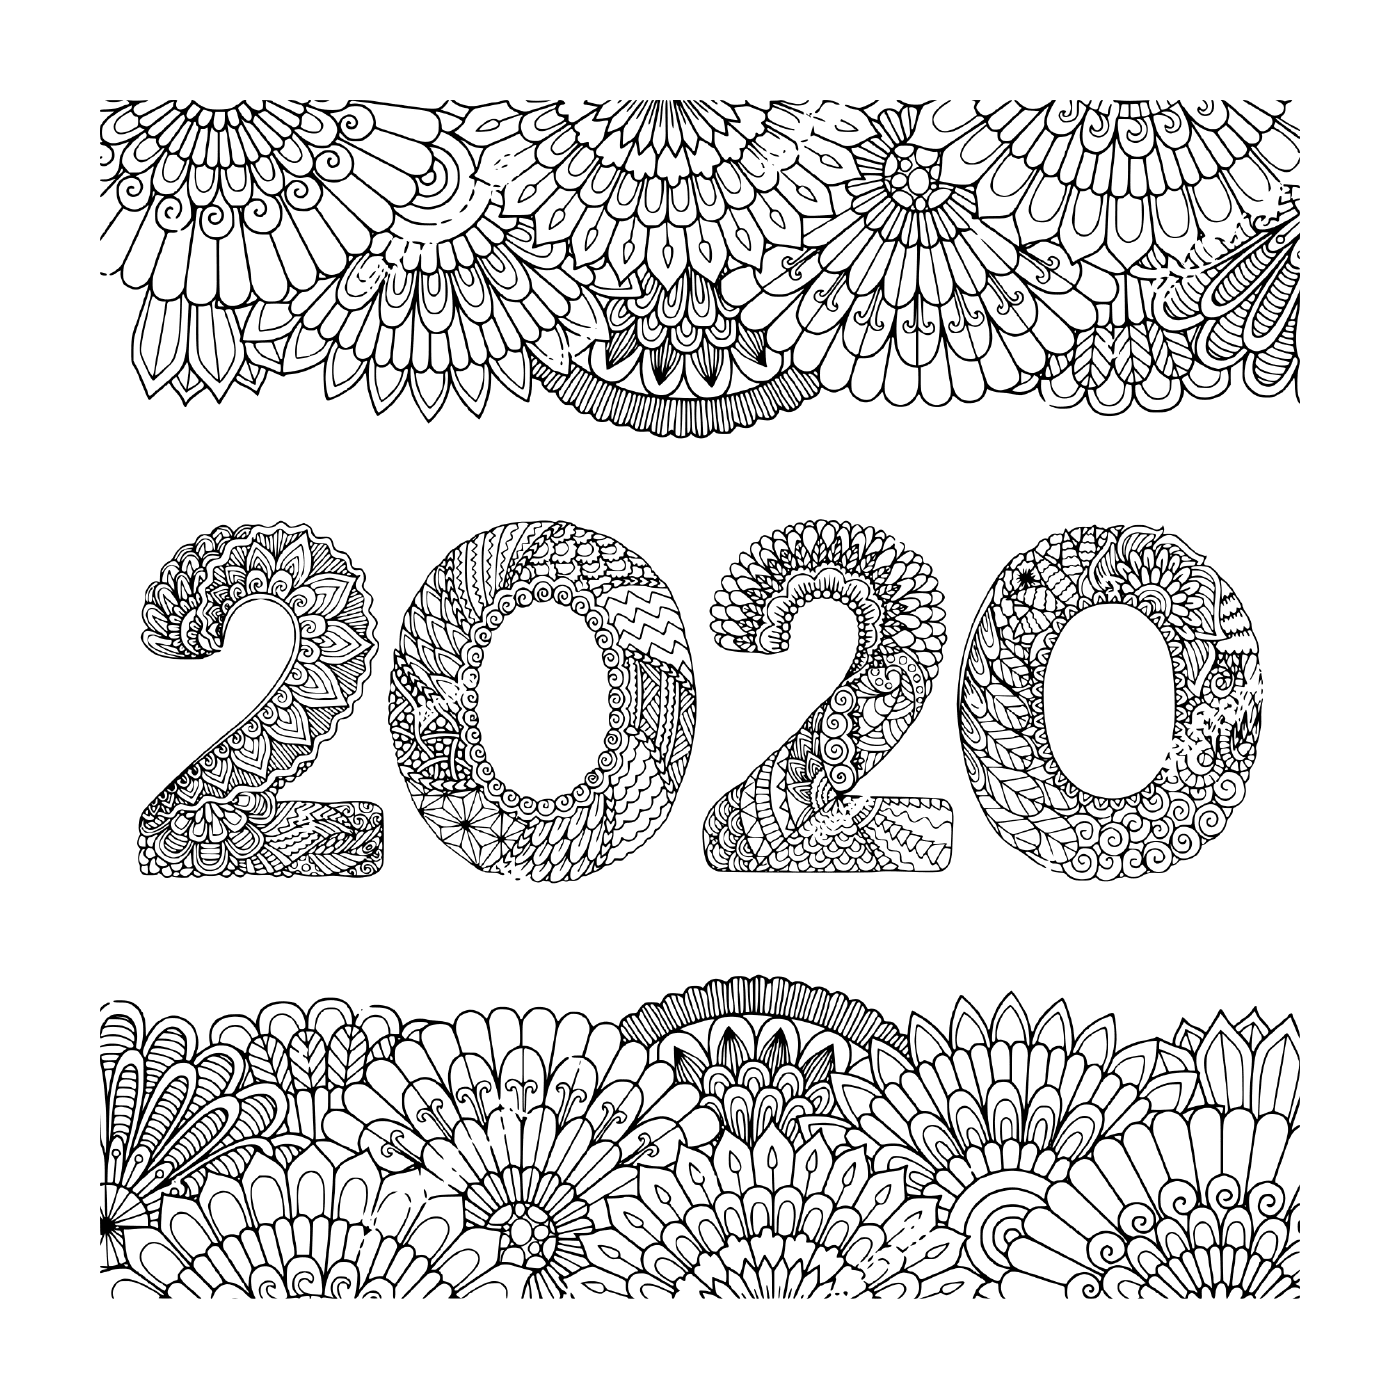   Cadre floral intérieur pour le nouvel an 2020 destiné aux adultes 